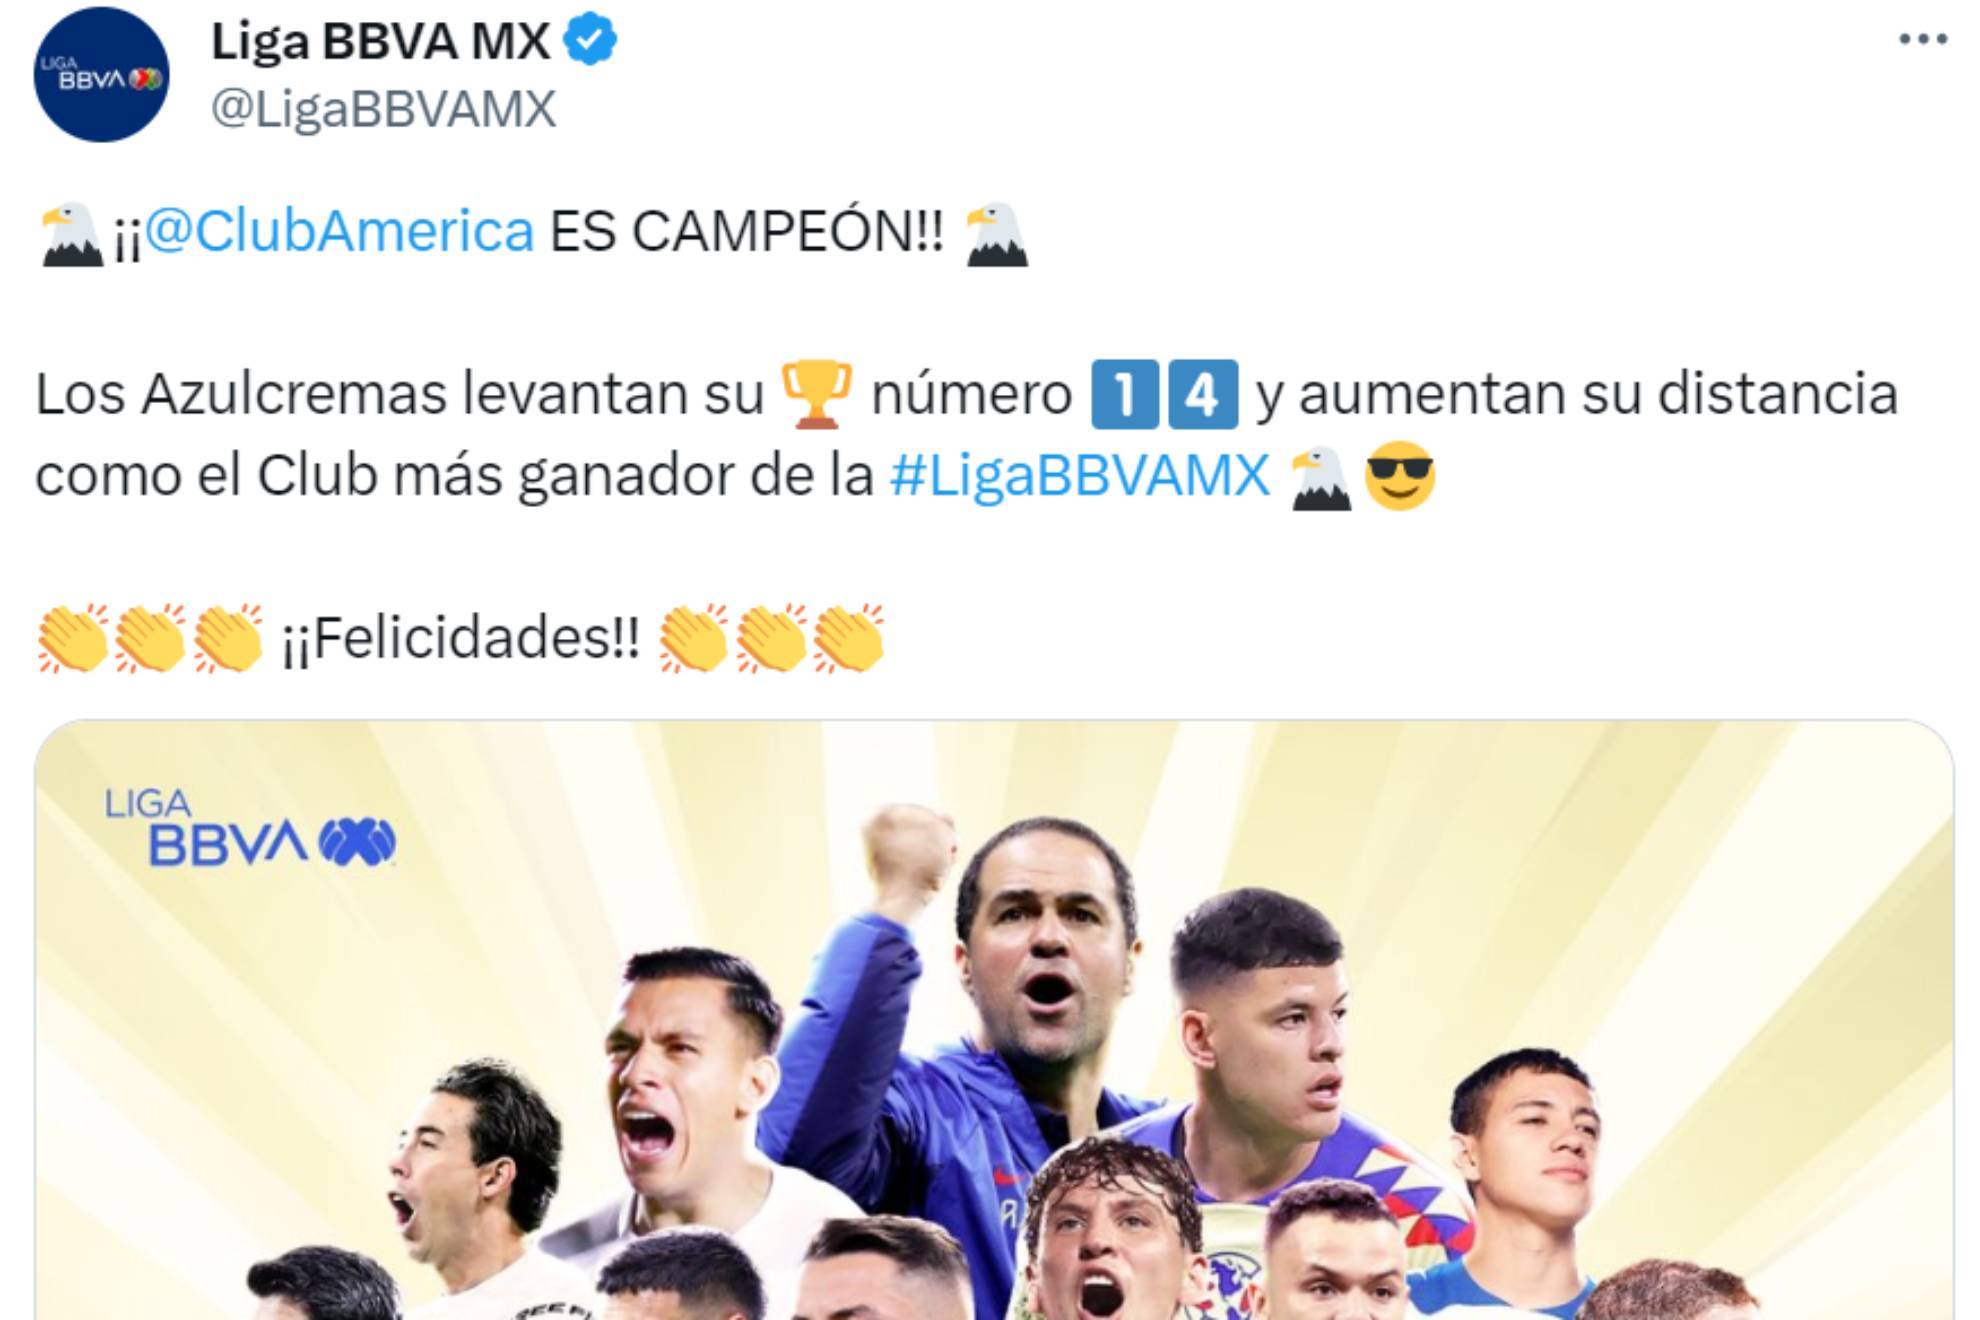 dialo ms! Chivas, Cruz Azul y Pumas sin felicitaciones por el campeonato del Amrica